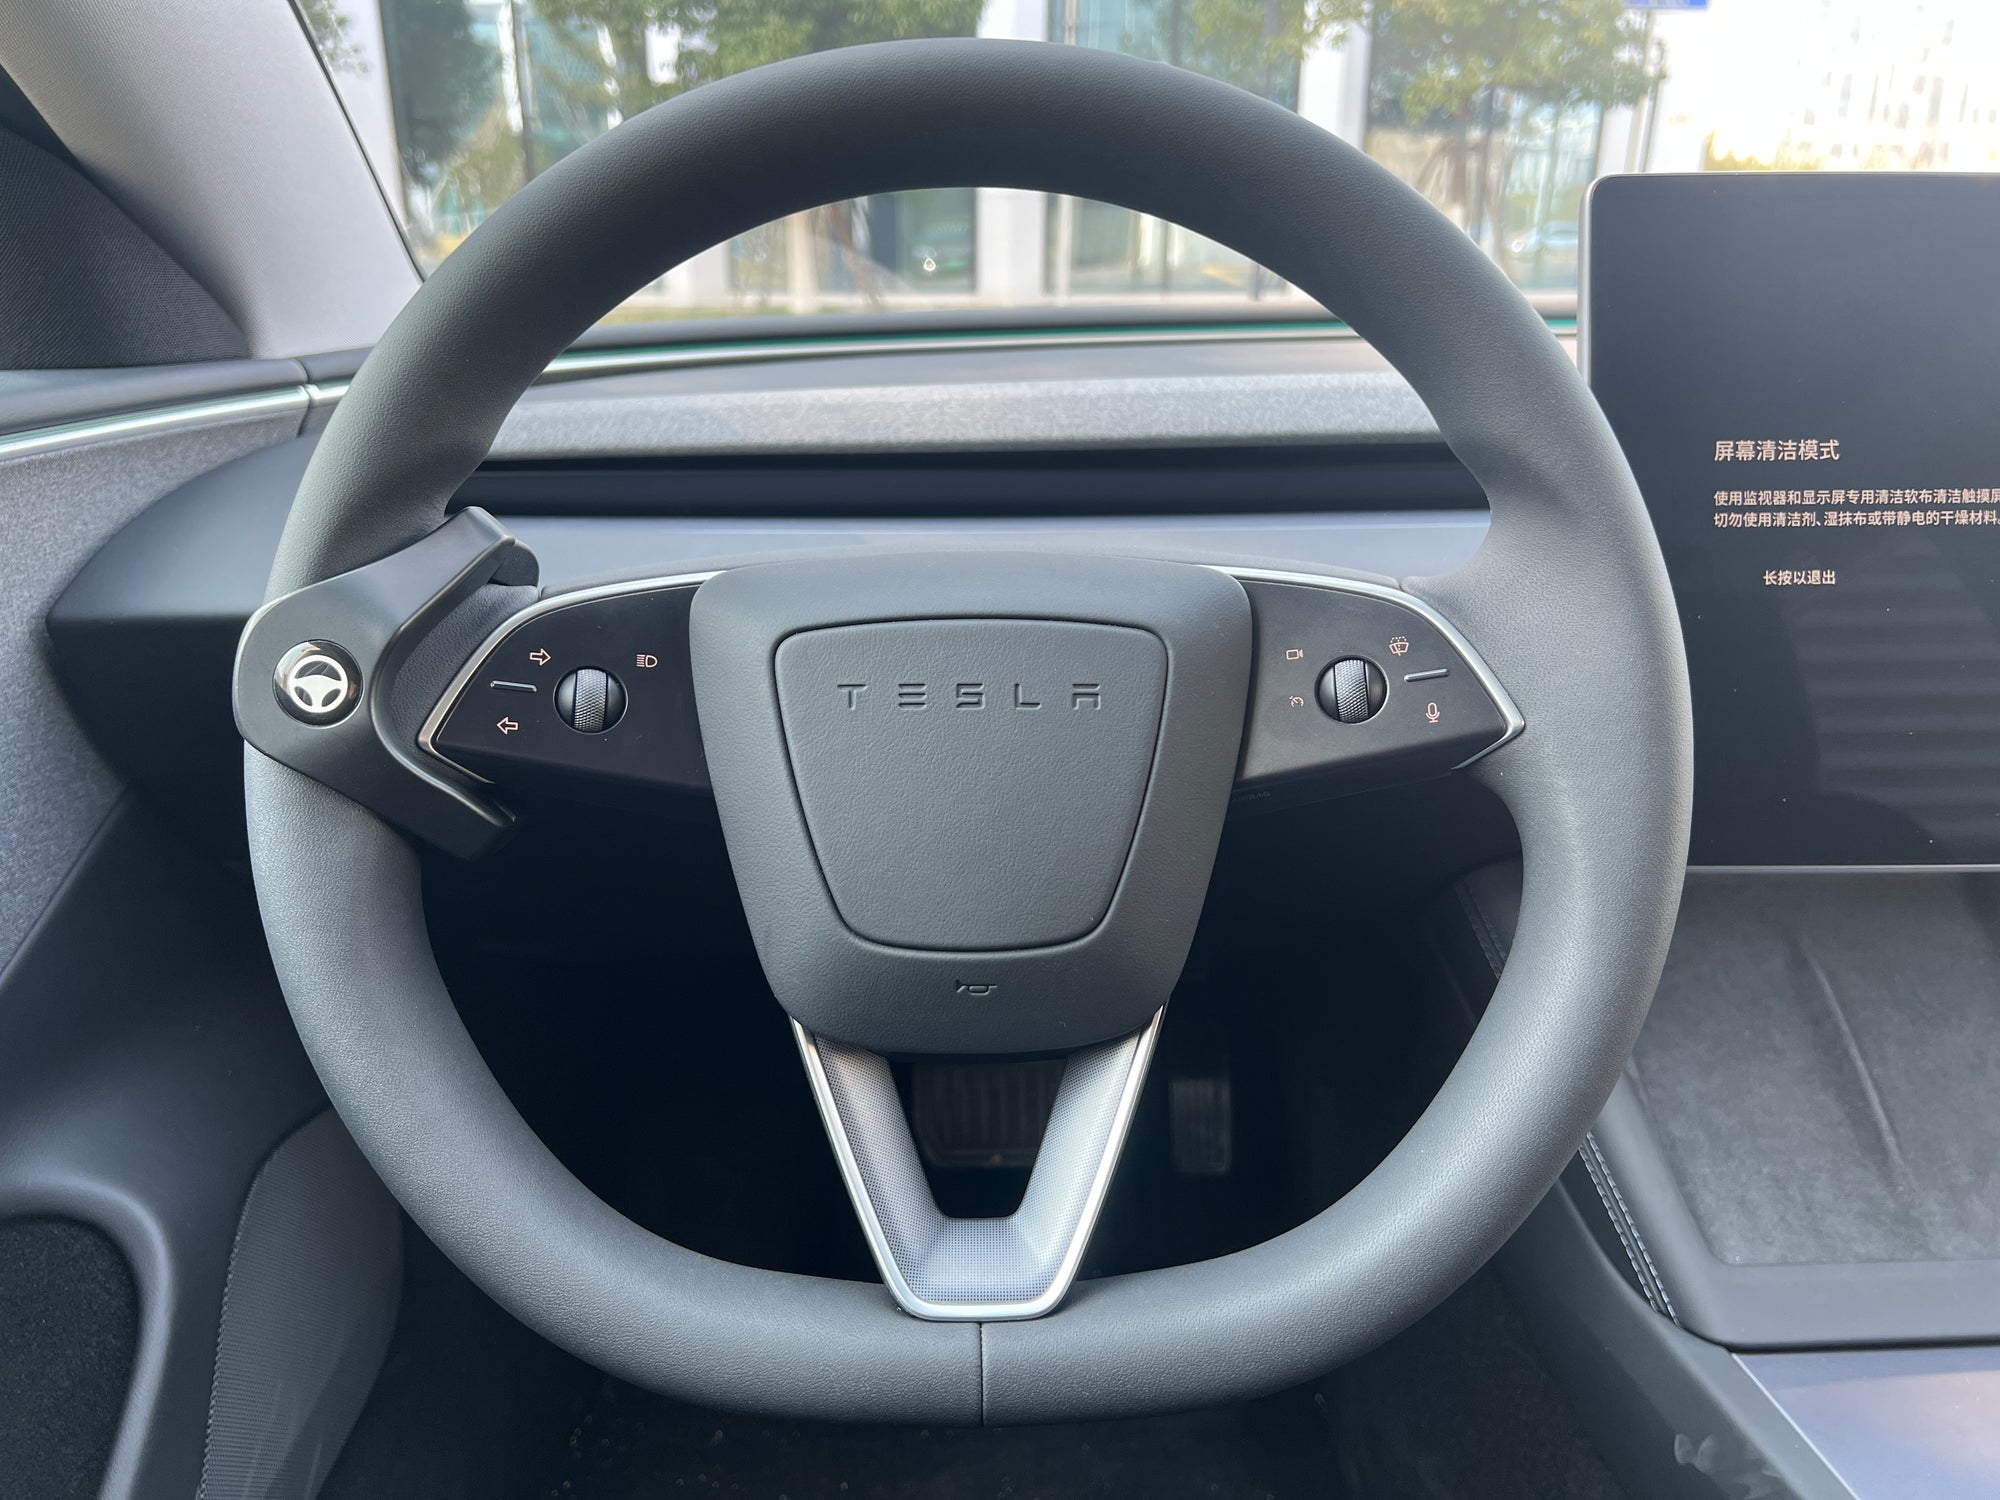 Tesla Autopilot Nag Reduction Devic for Model 3 Highland only